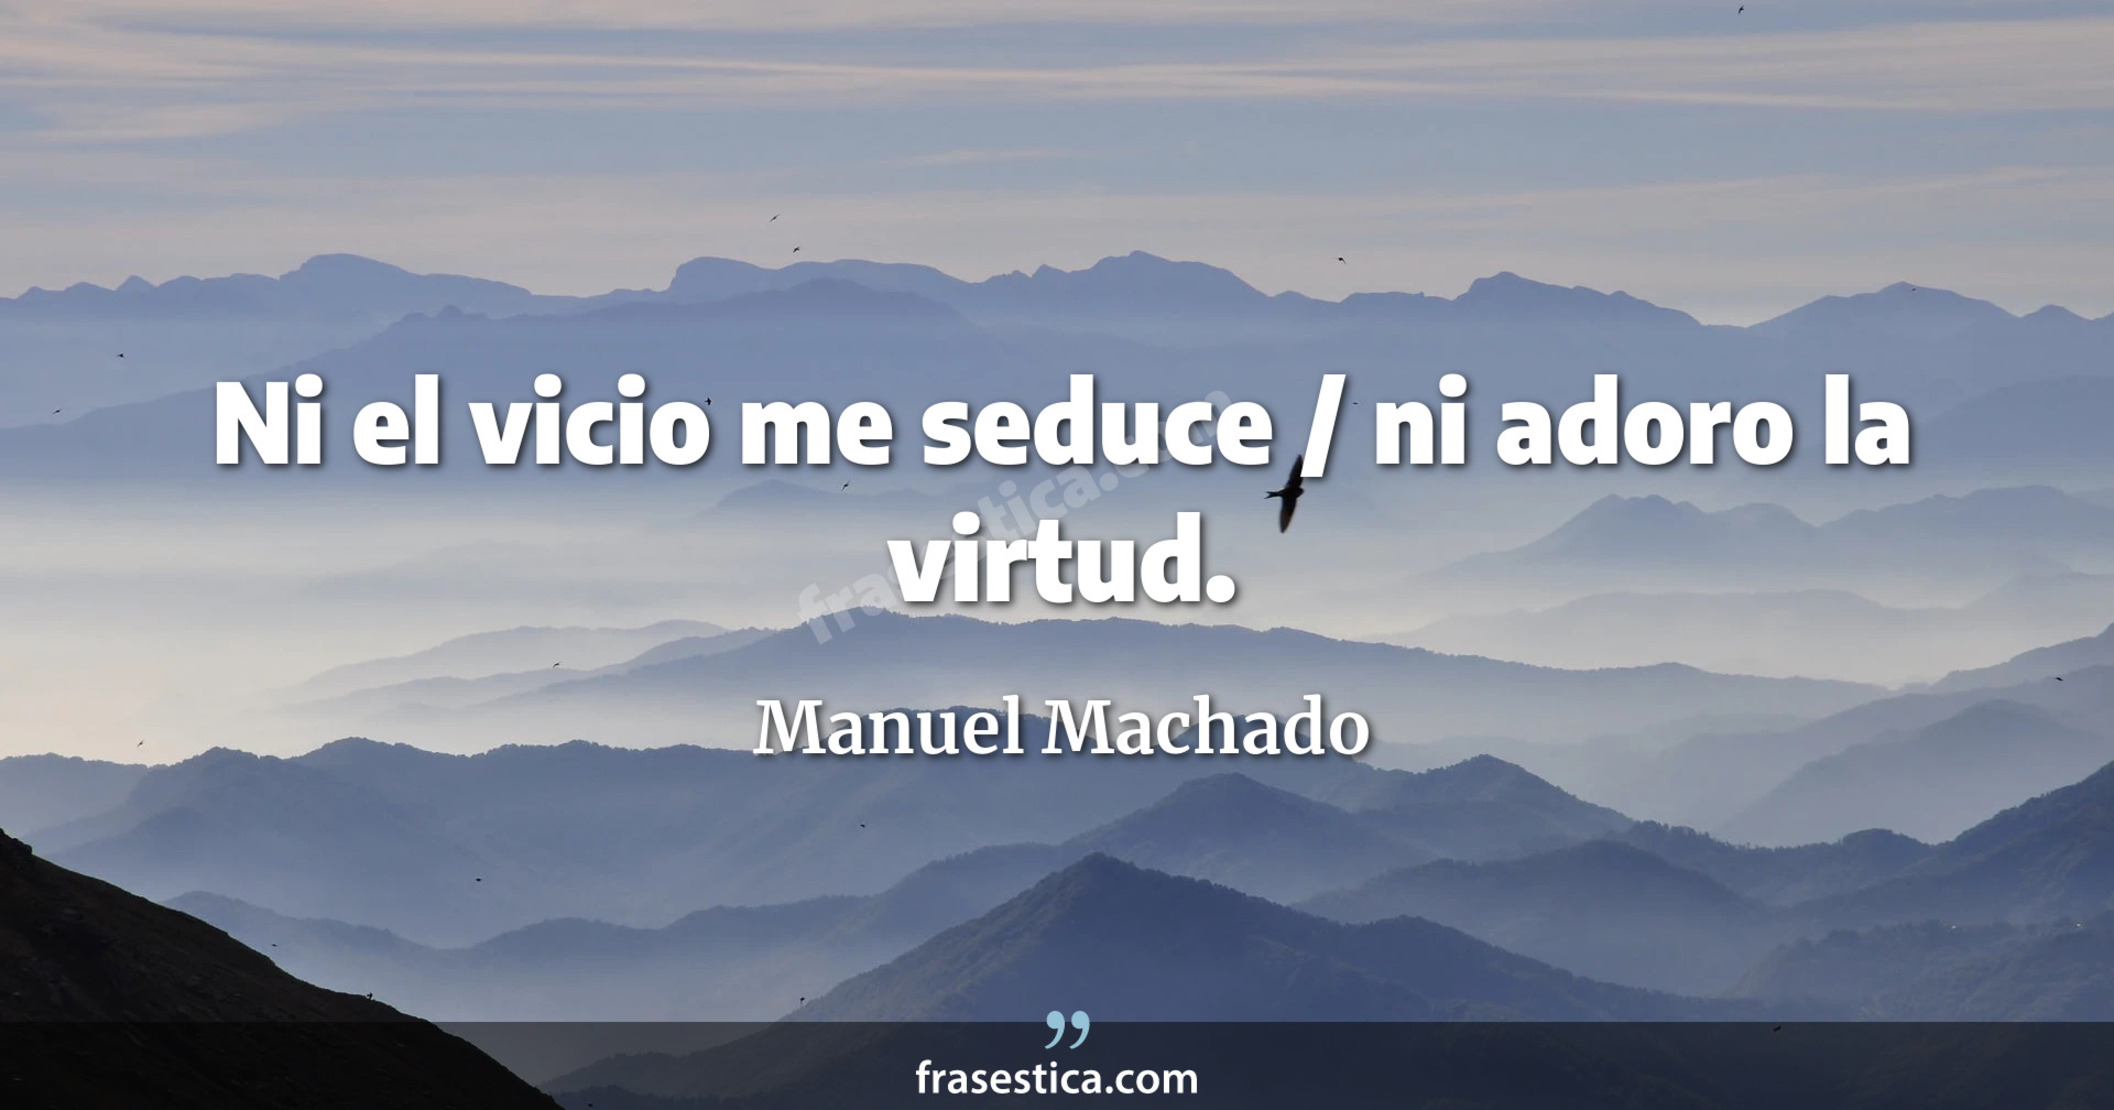 Ni el vicio me seduce / ni adoro la virtud. - Manuel Machado